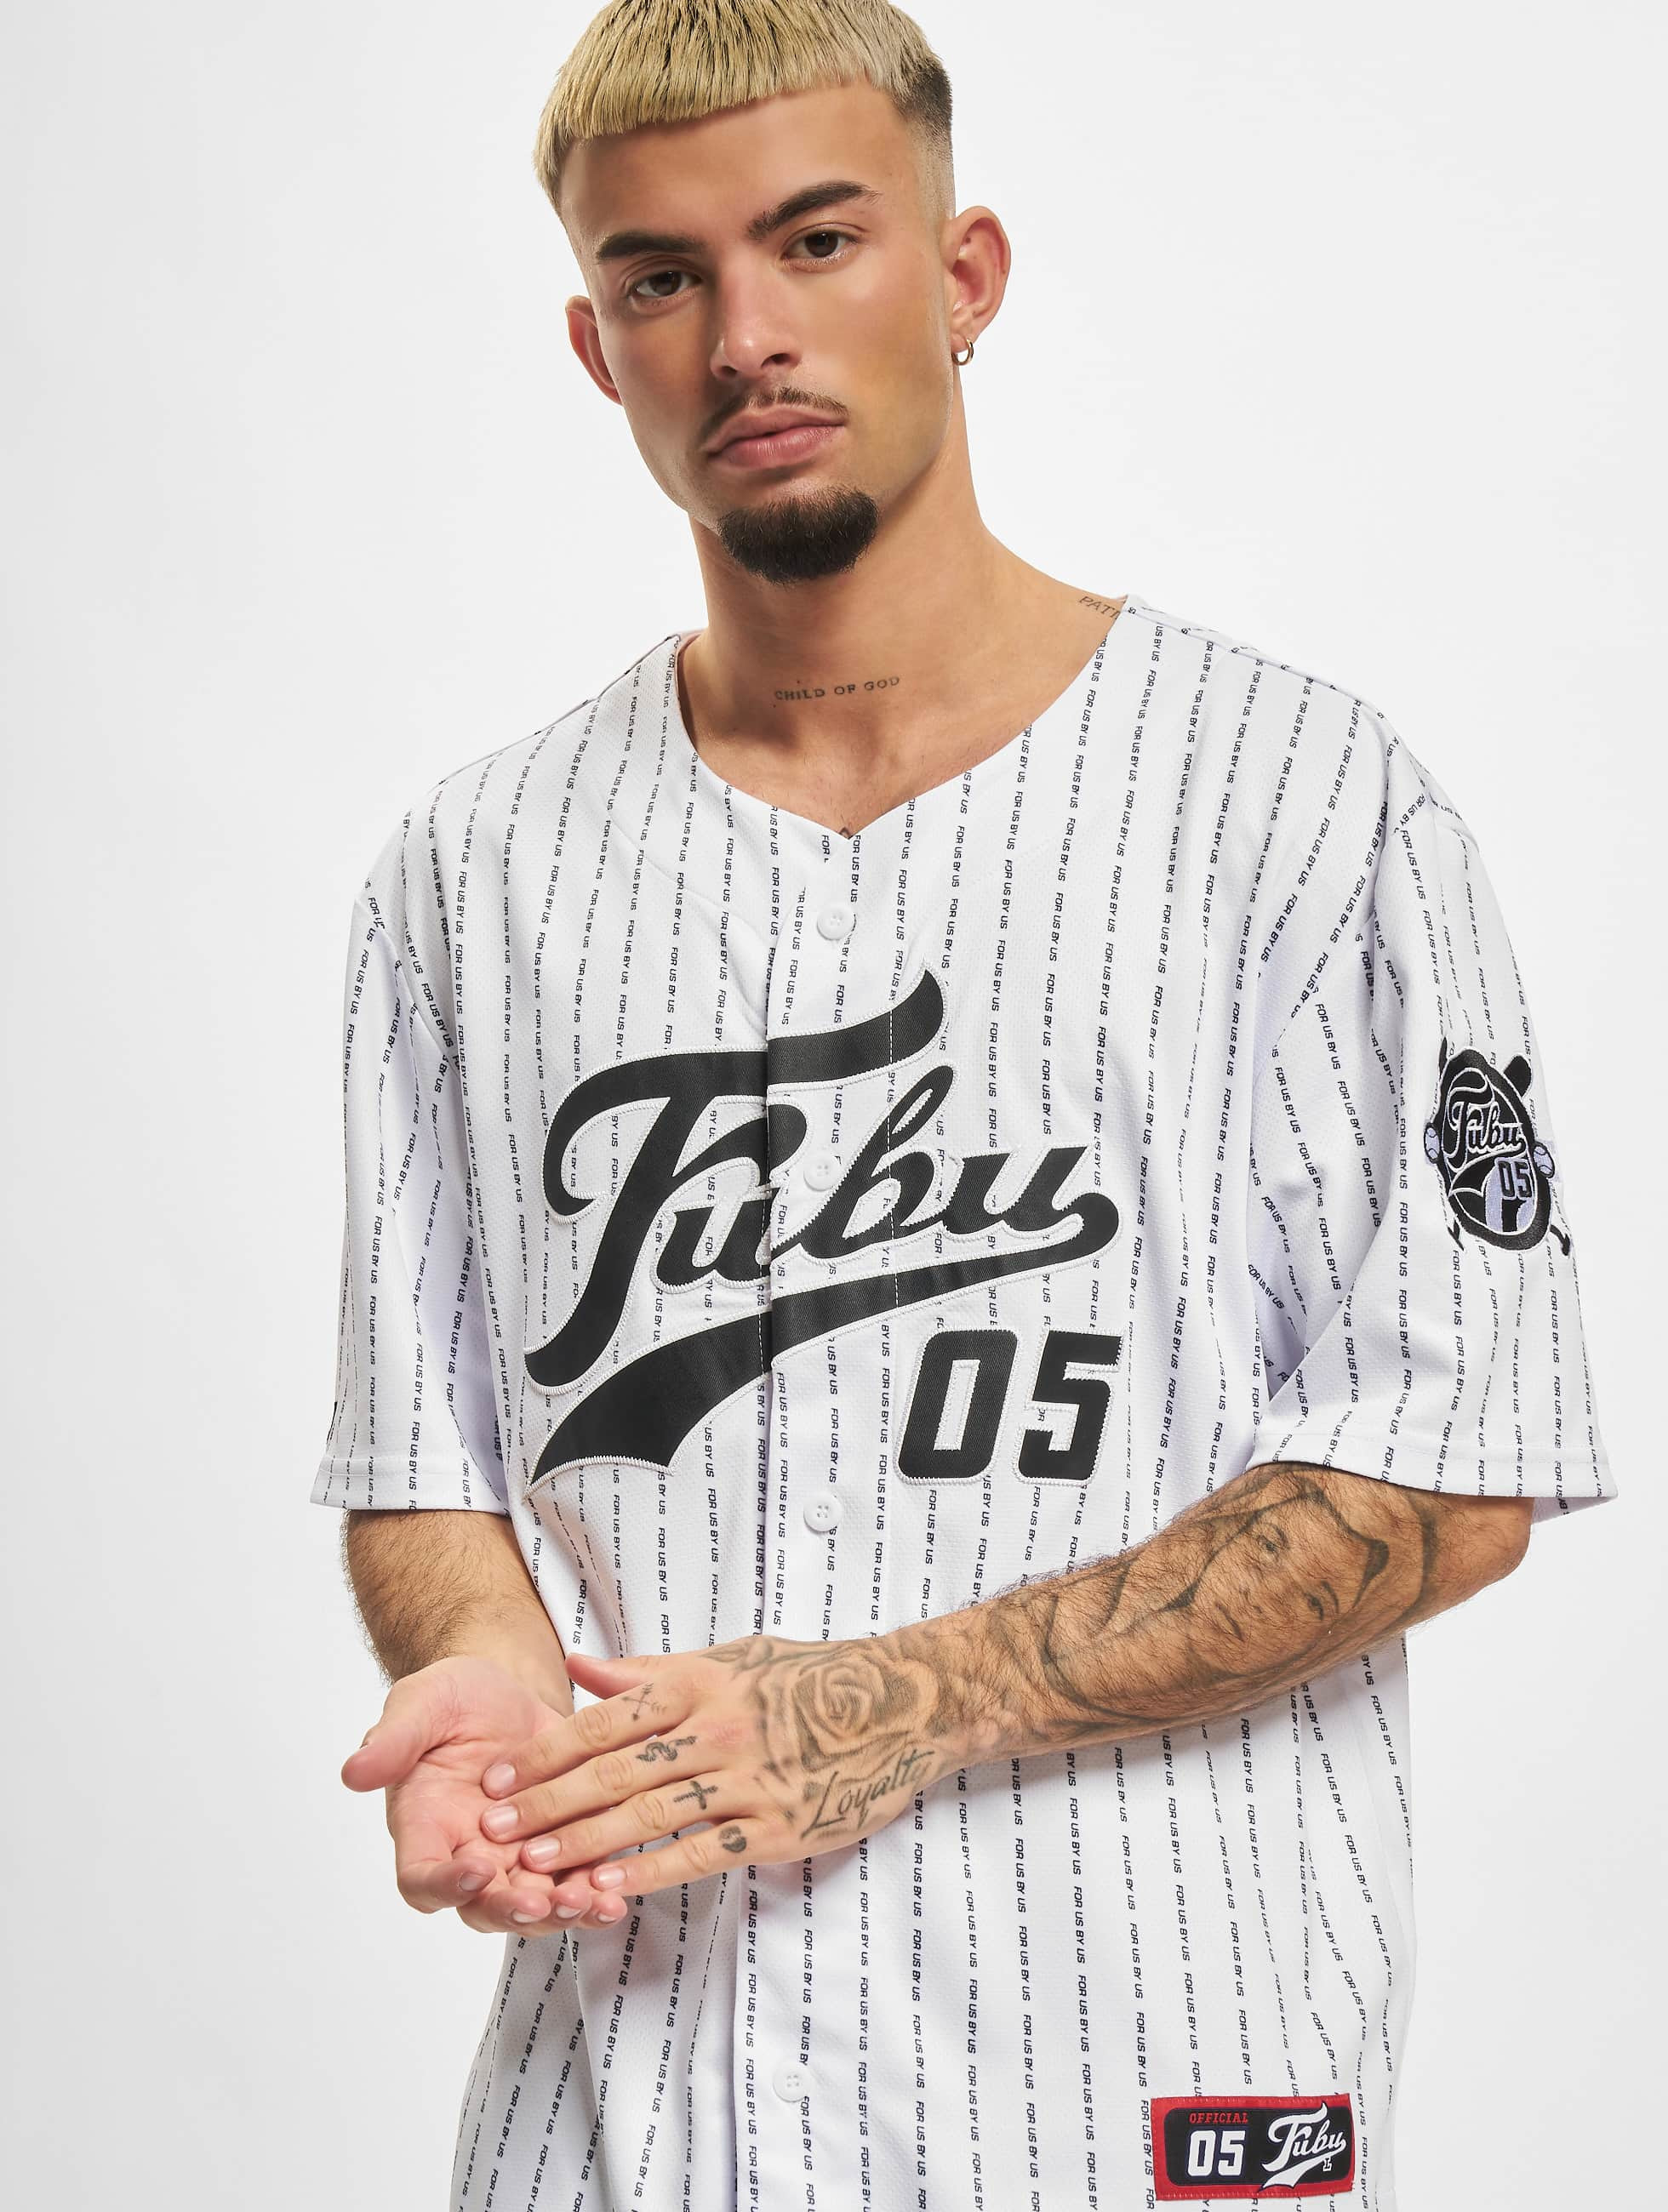 Fubu Overwear / Pinstripe Baseball Jersey in white 878455